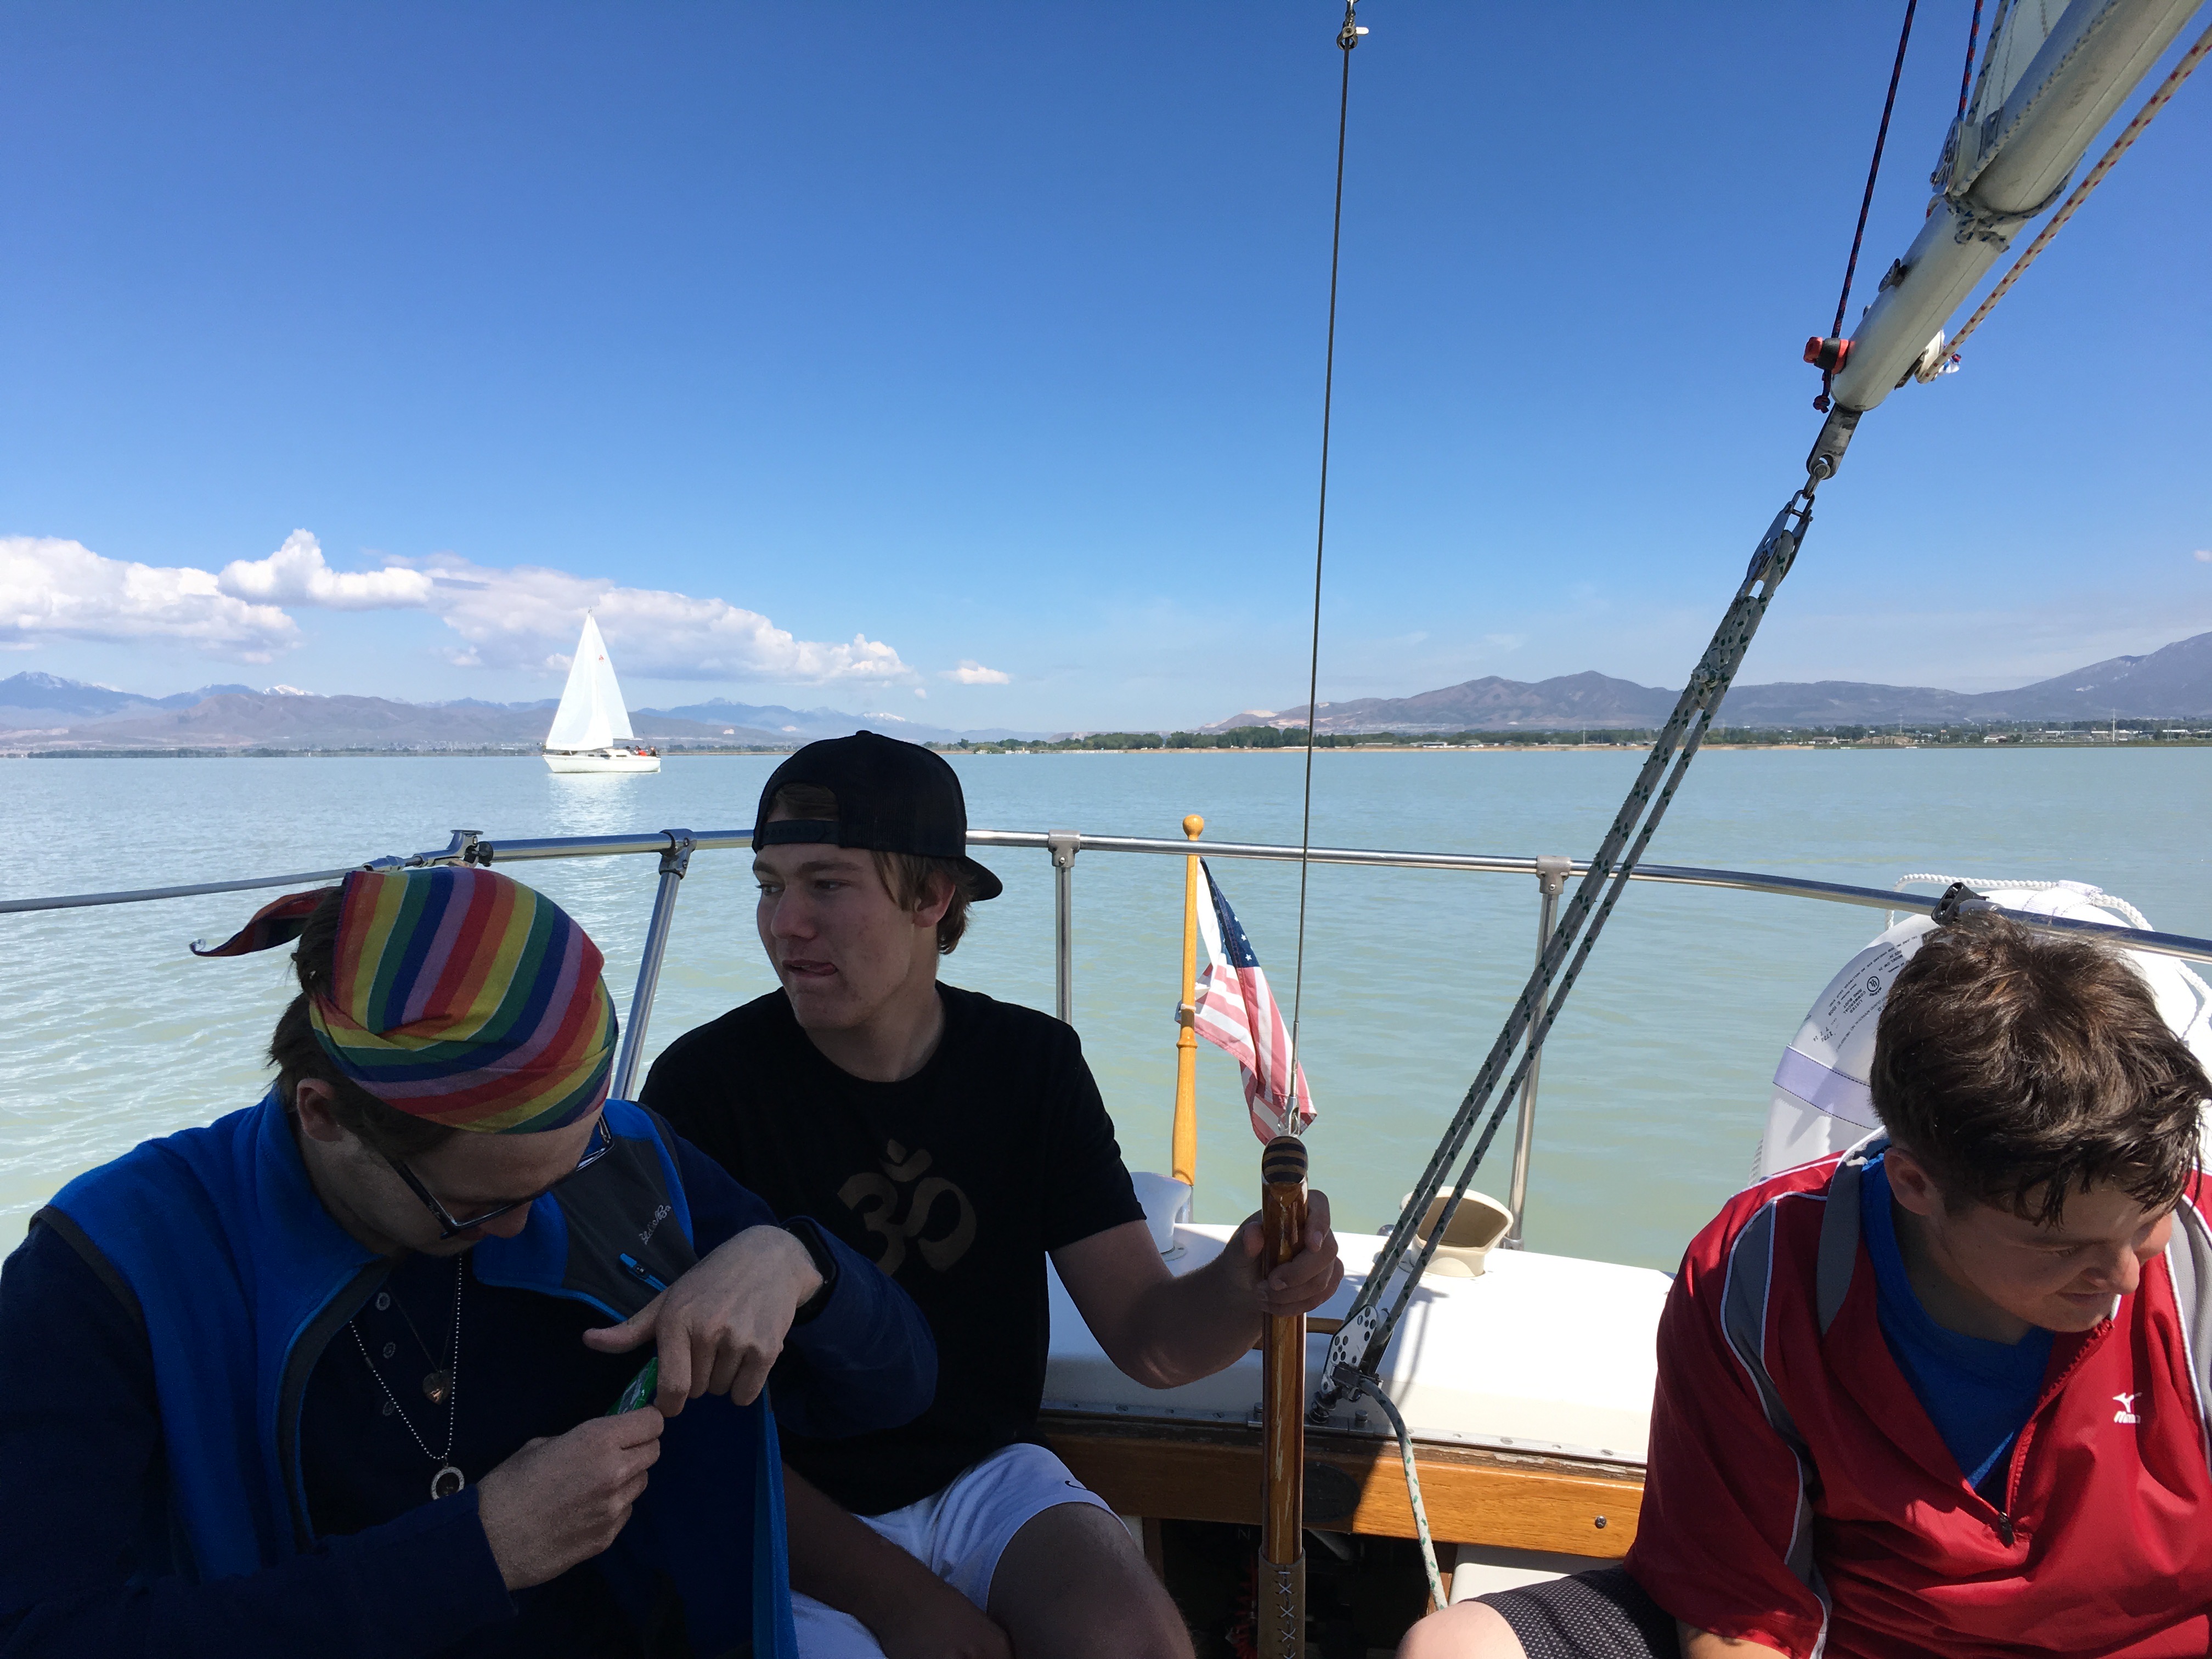 Kids sailing vessel on Utah lake